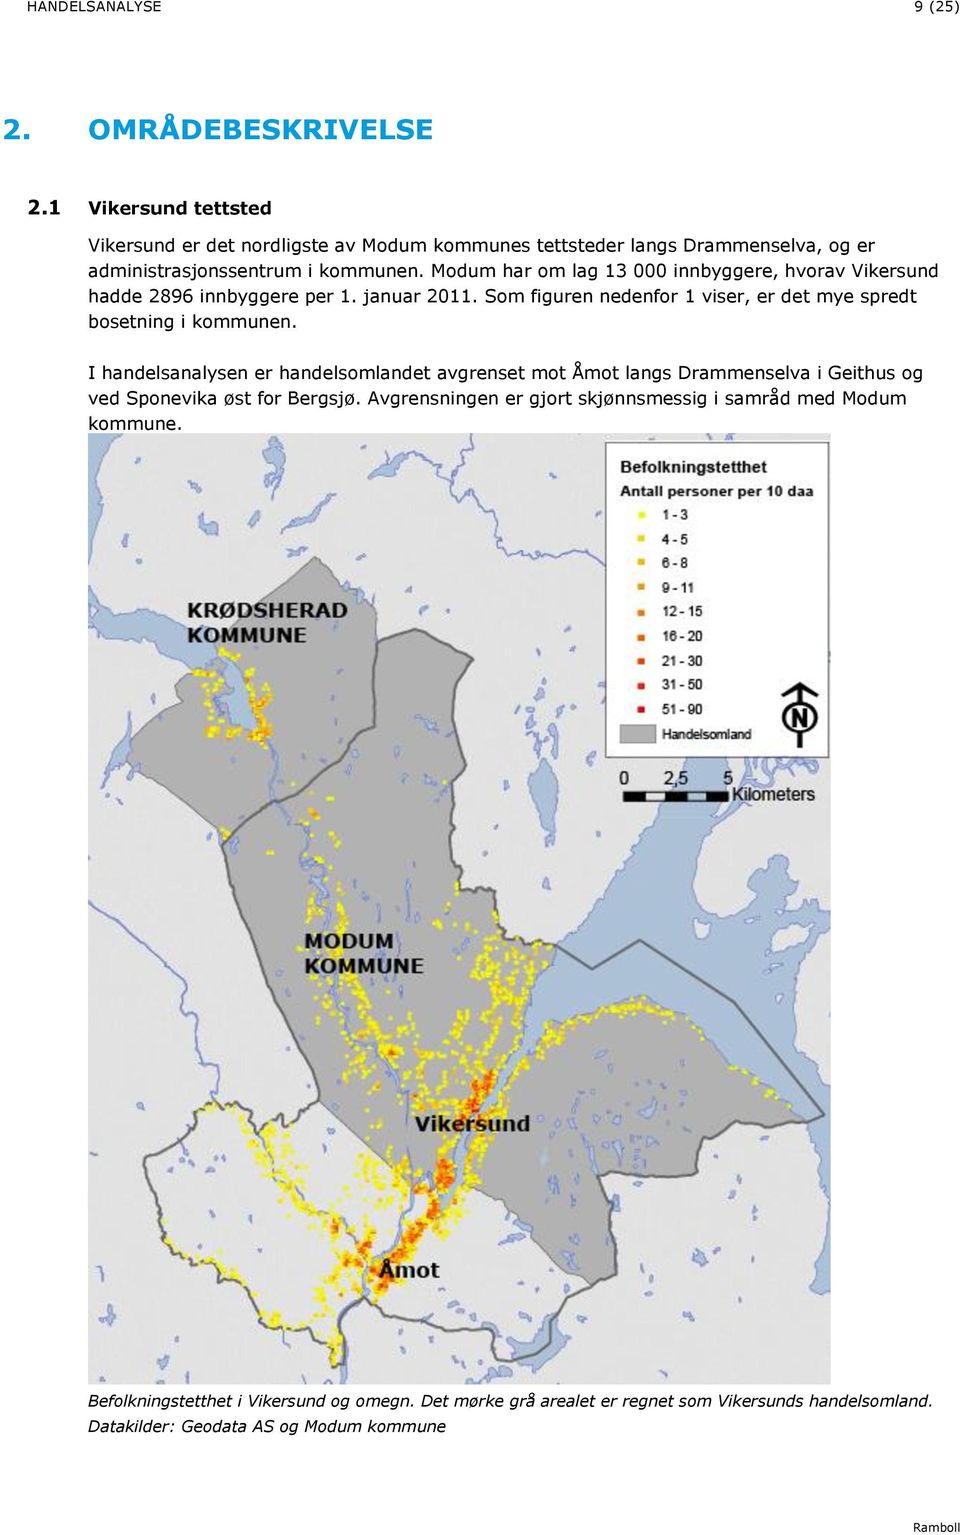 Modum har om lag 3 000 innbyggere, hvorav Vikersund hadde 2896 innbyggere per. januar 20. Som figuren nedenfor viser, er det mye spredt bosetning i kommunen.